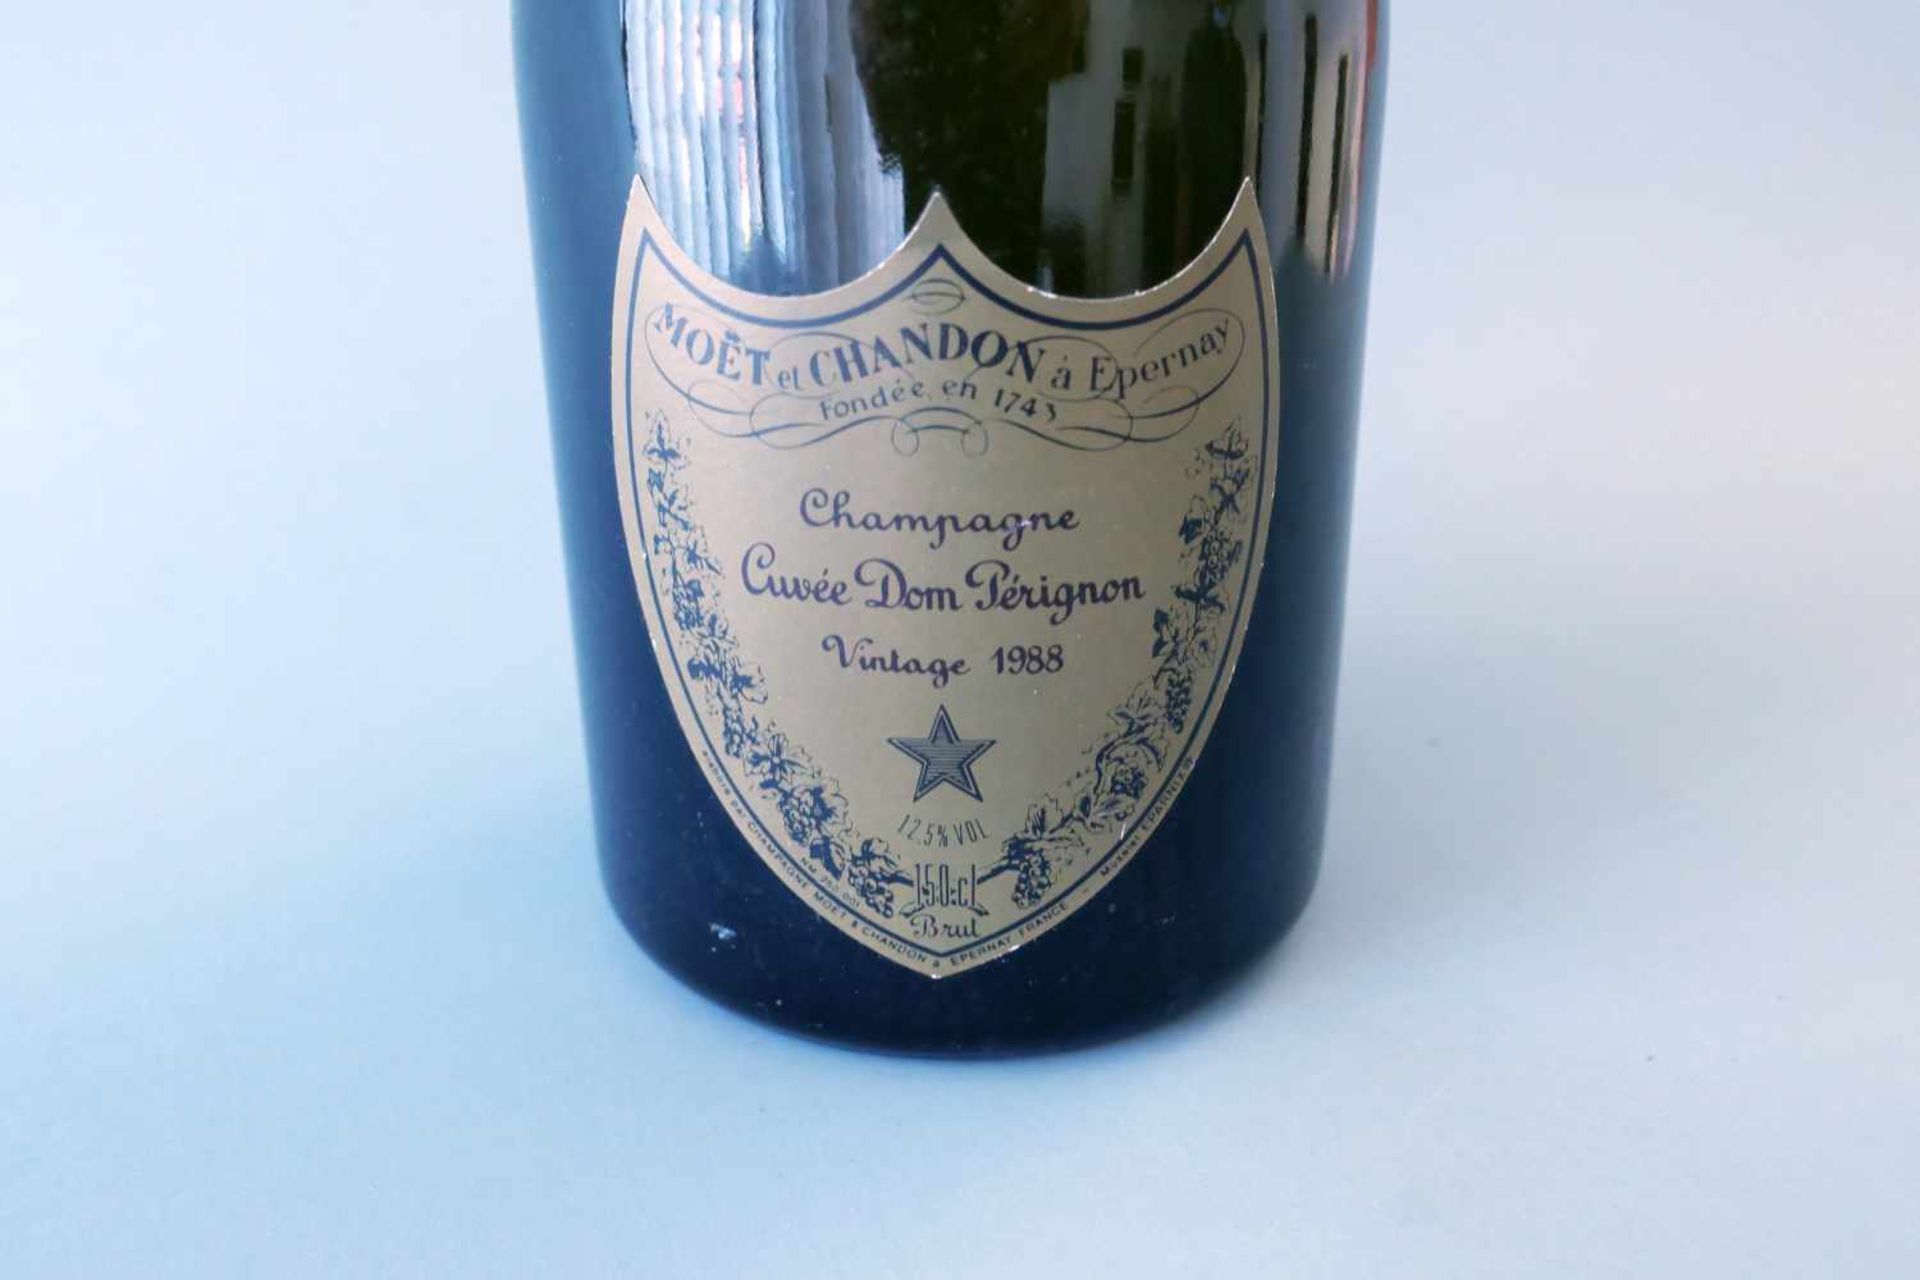 Moët ChandonChampagne Cuvée Dom Perignon Vintage, Jahrgang 1988, Inhalt 1500 ml. Épernay, Marne, - Image 2 of 2